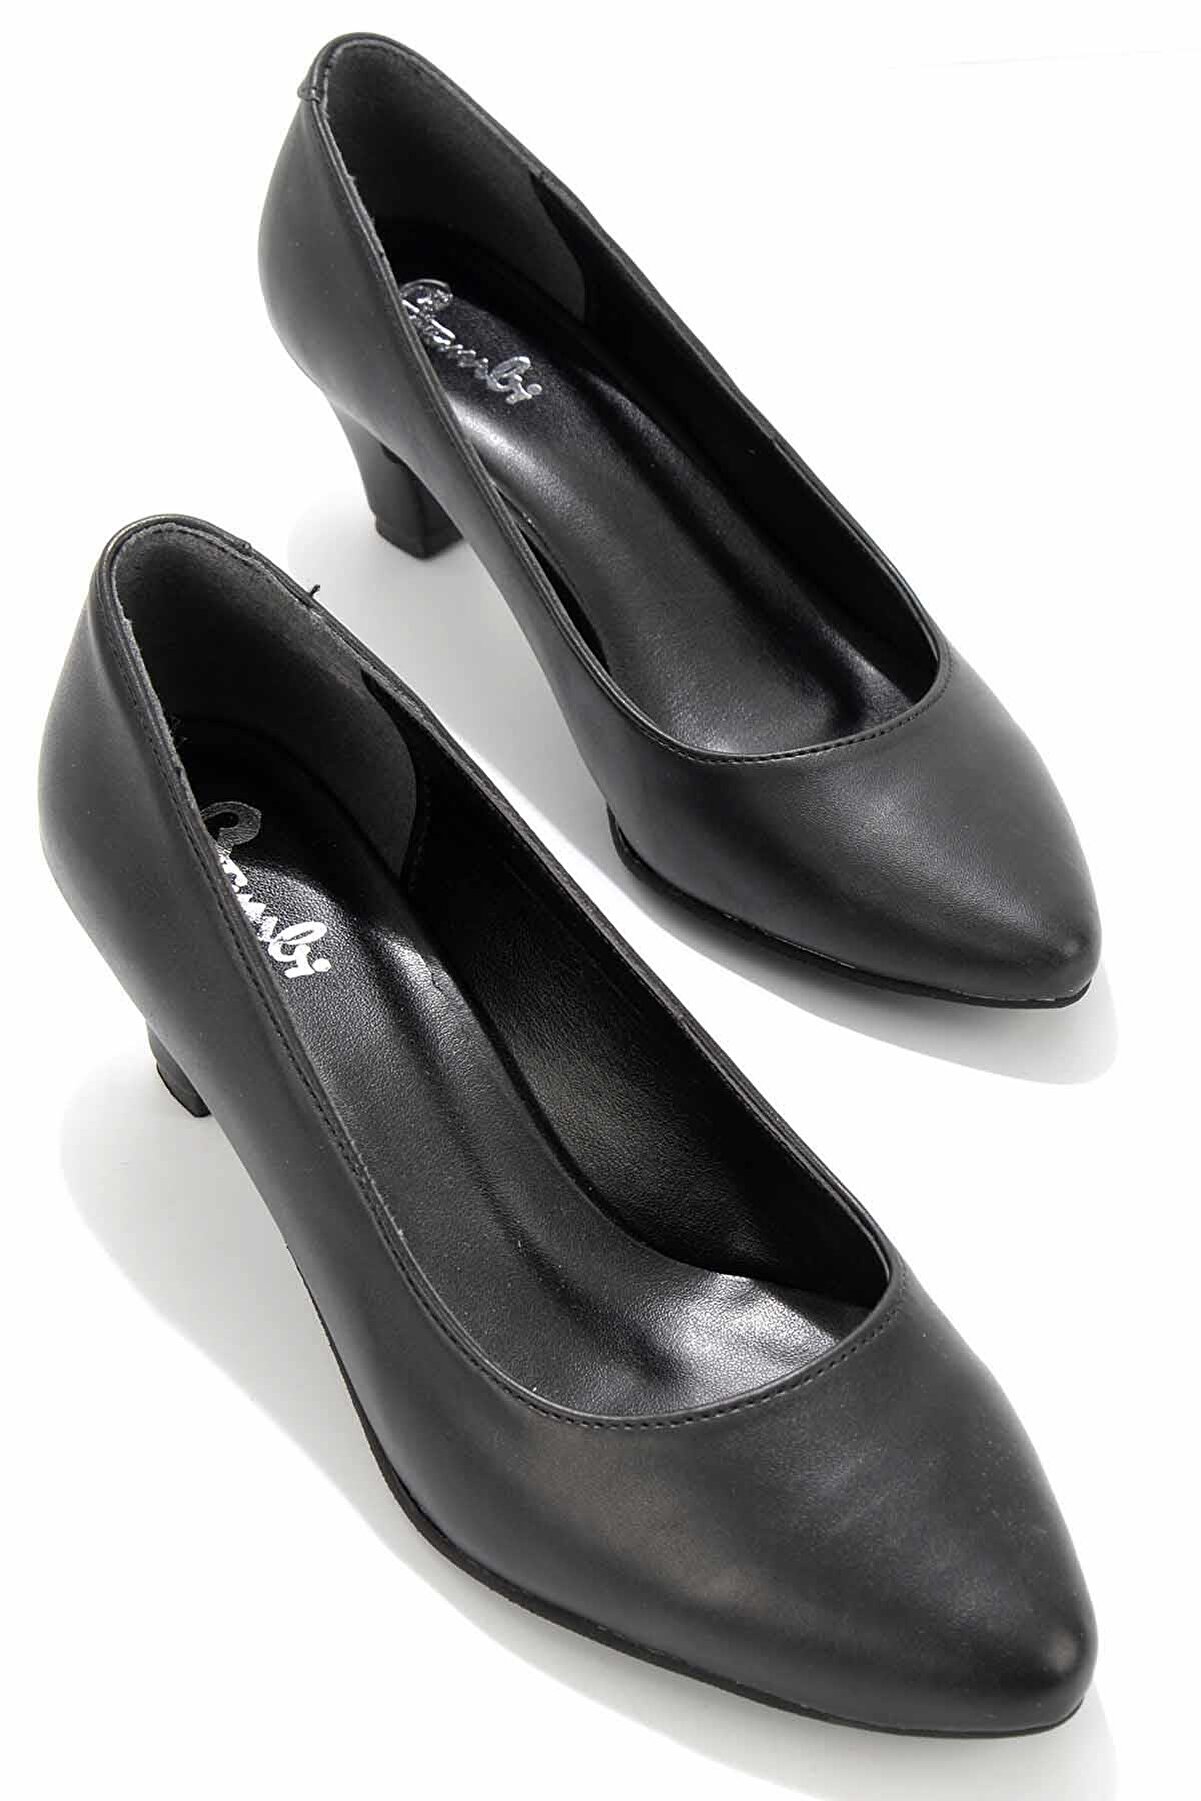 Bambi Siyah Kadın Klasik Topuklu Ayakkabı K01848020109